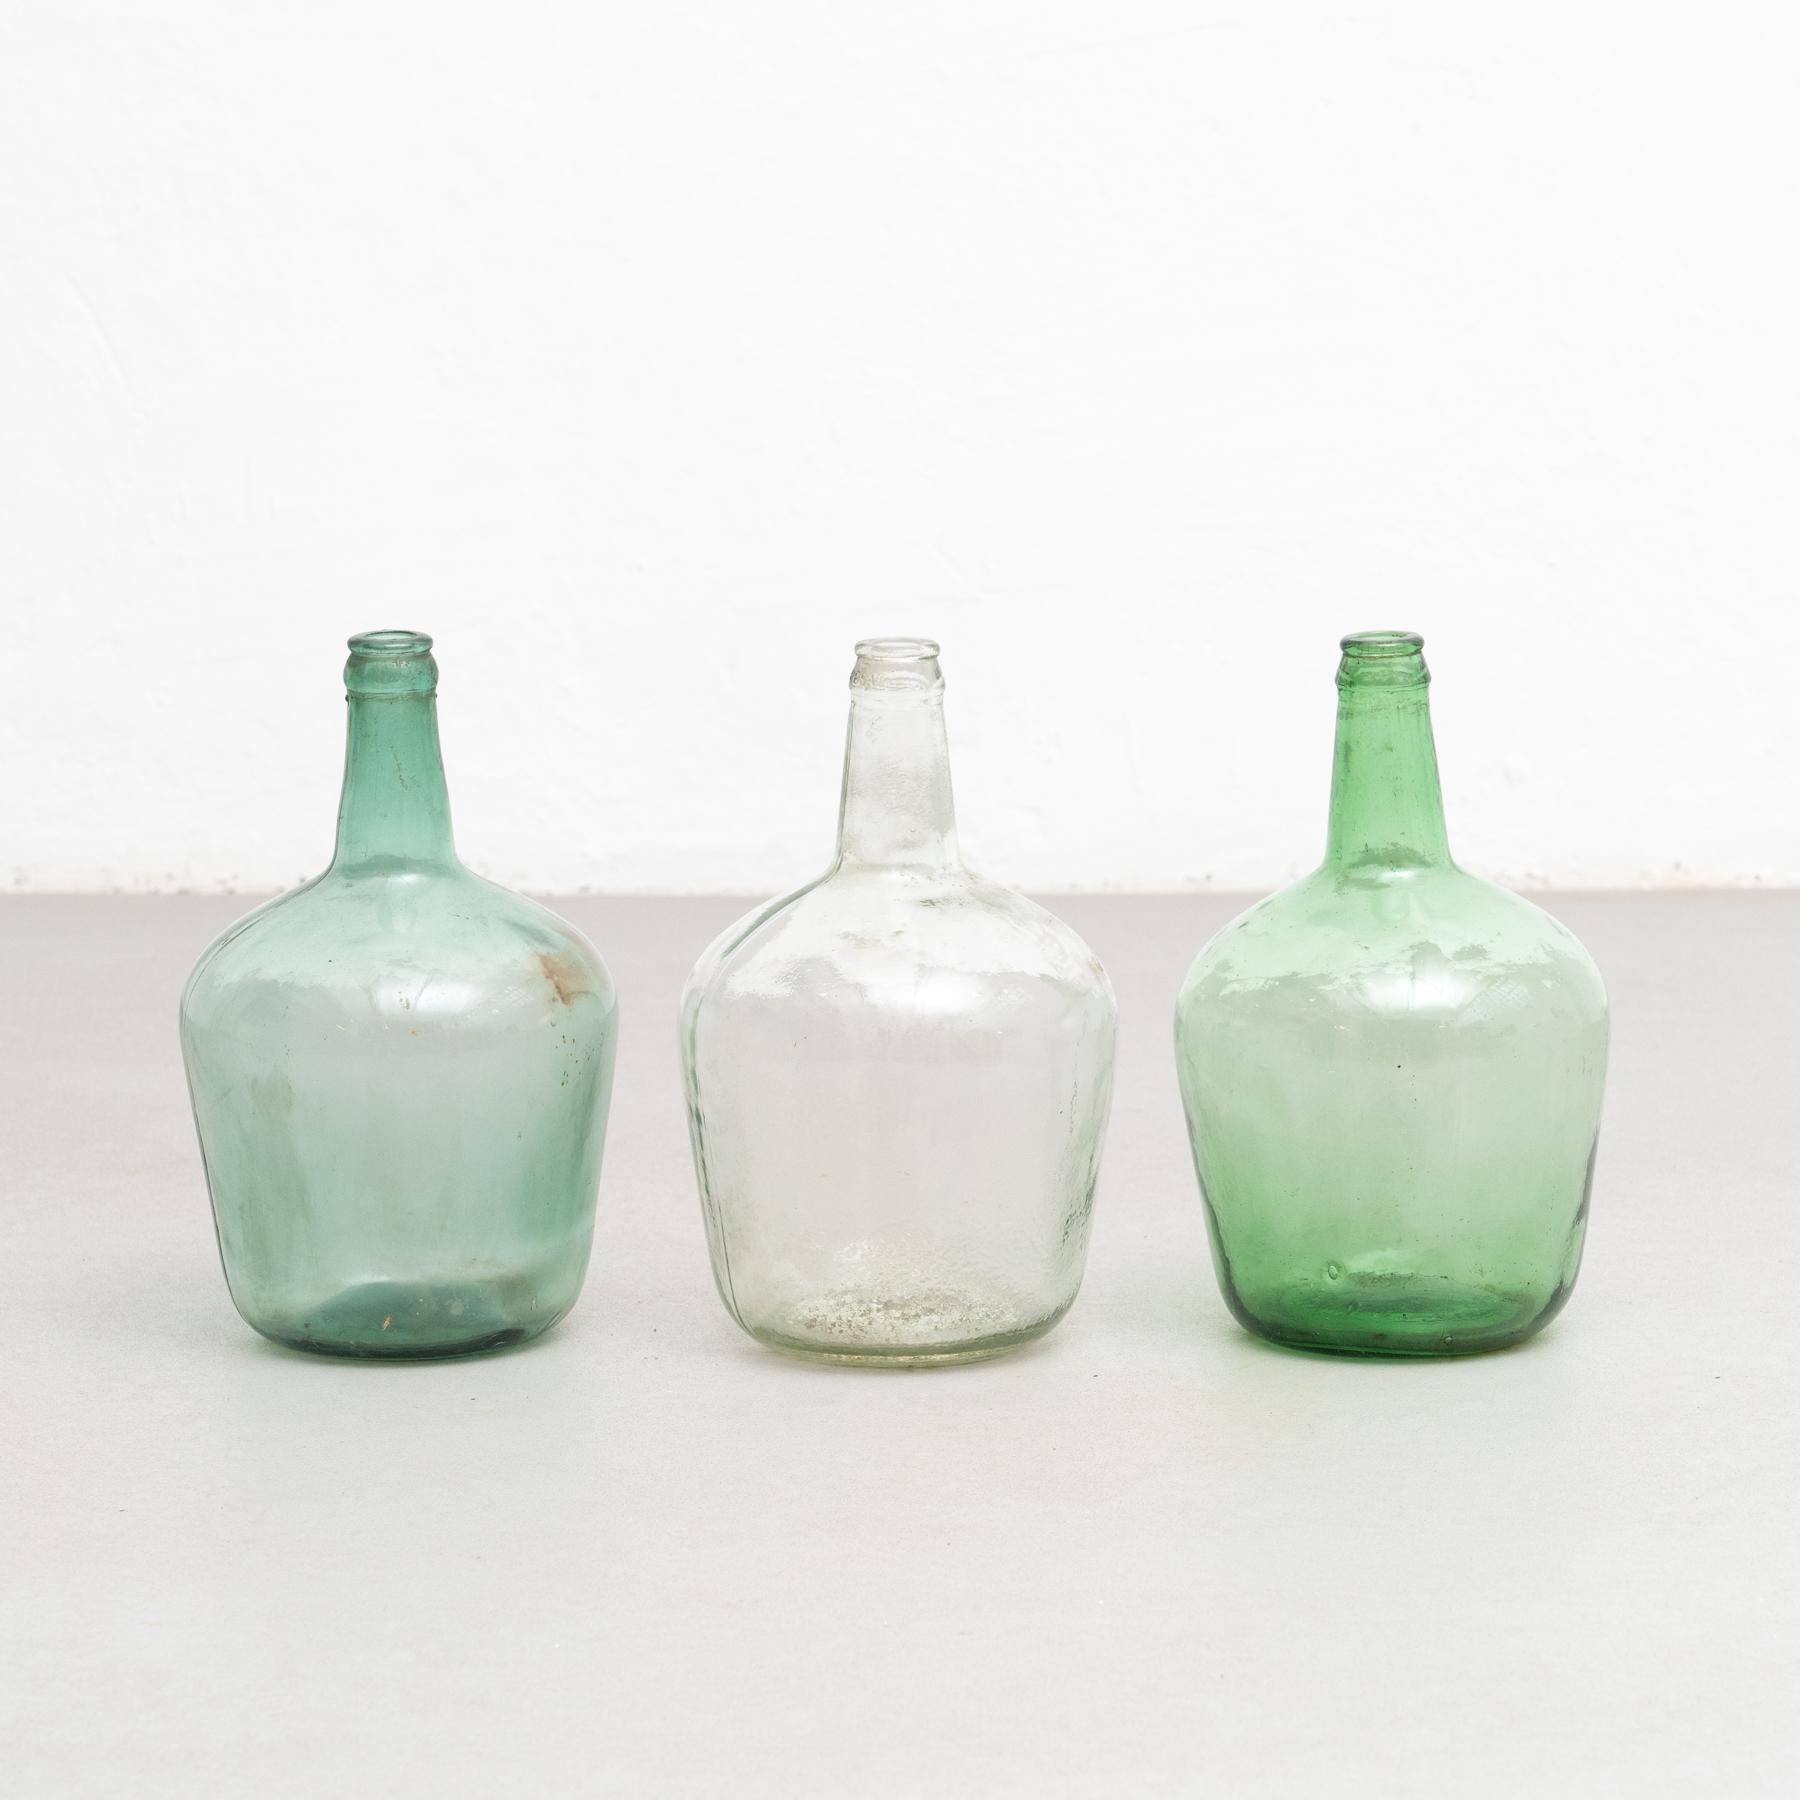 Ein Satz von drei antiken Demijohn-Glasflaschen aus Barcelona.

Hergestellt von einem unbekannten Hersteller in Spanien, um 1950.

In ursprünglichem Zustand mit geringen Gebrauchsspuren, die dem Alter und dem Gebrauch entsprechen, wobei eine schöne